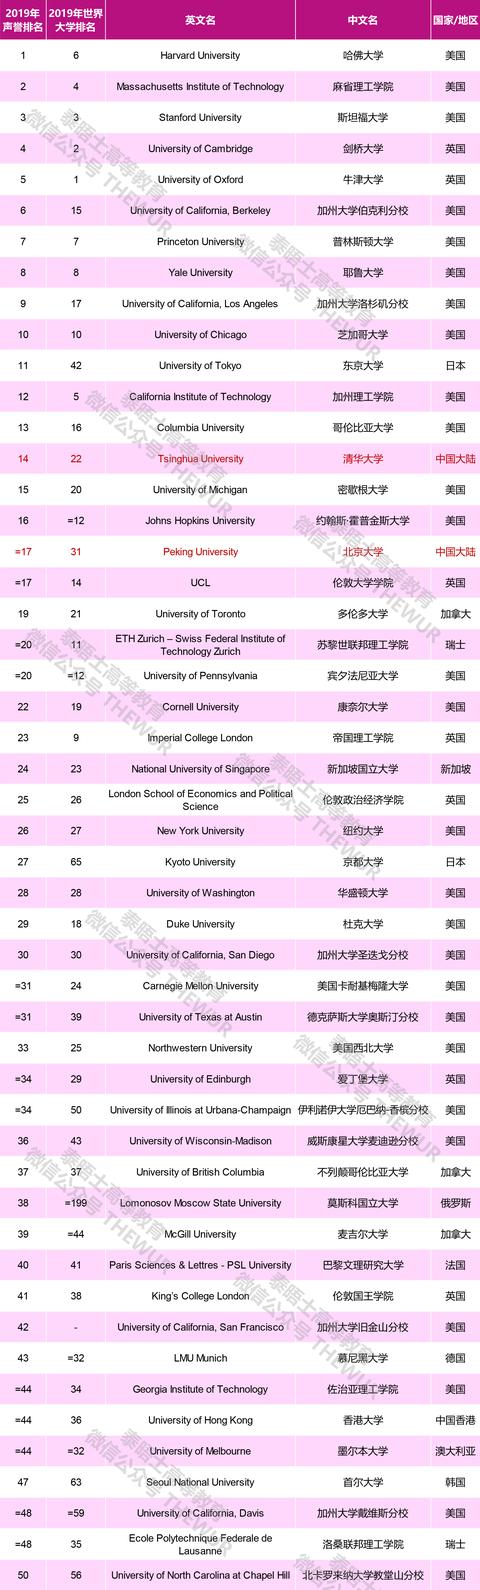 2019泰晤士世界大学声誉排名公布！6所中国大陆高校进入TOP100
                
            